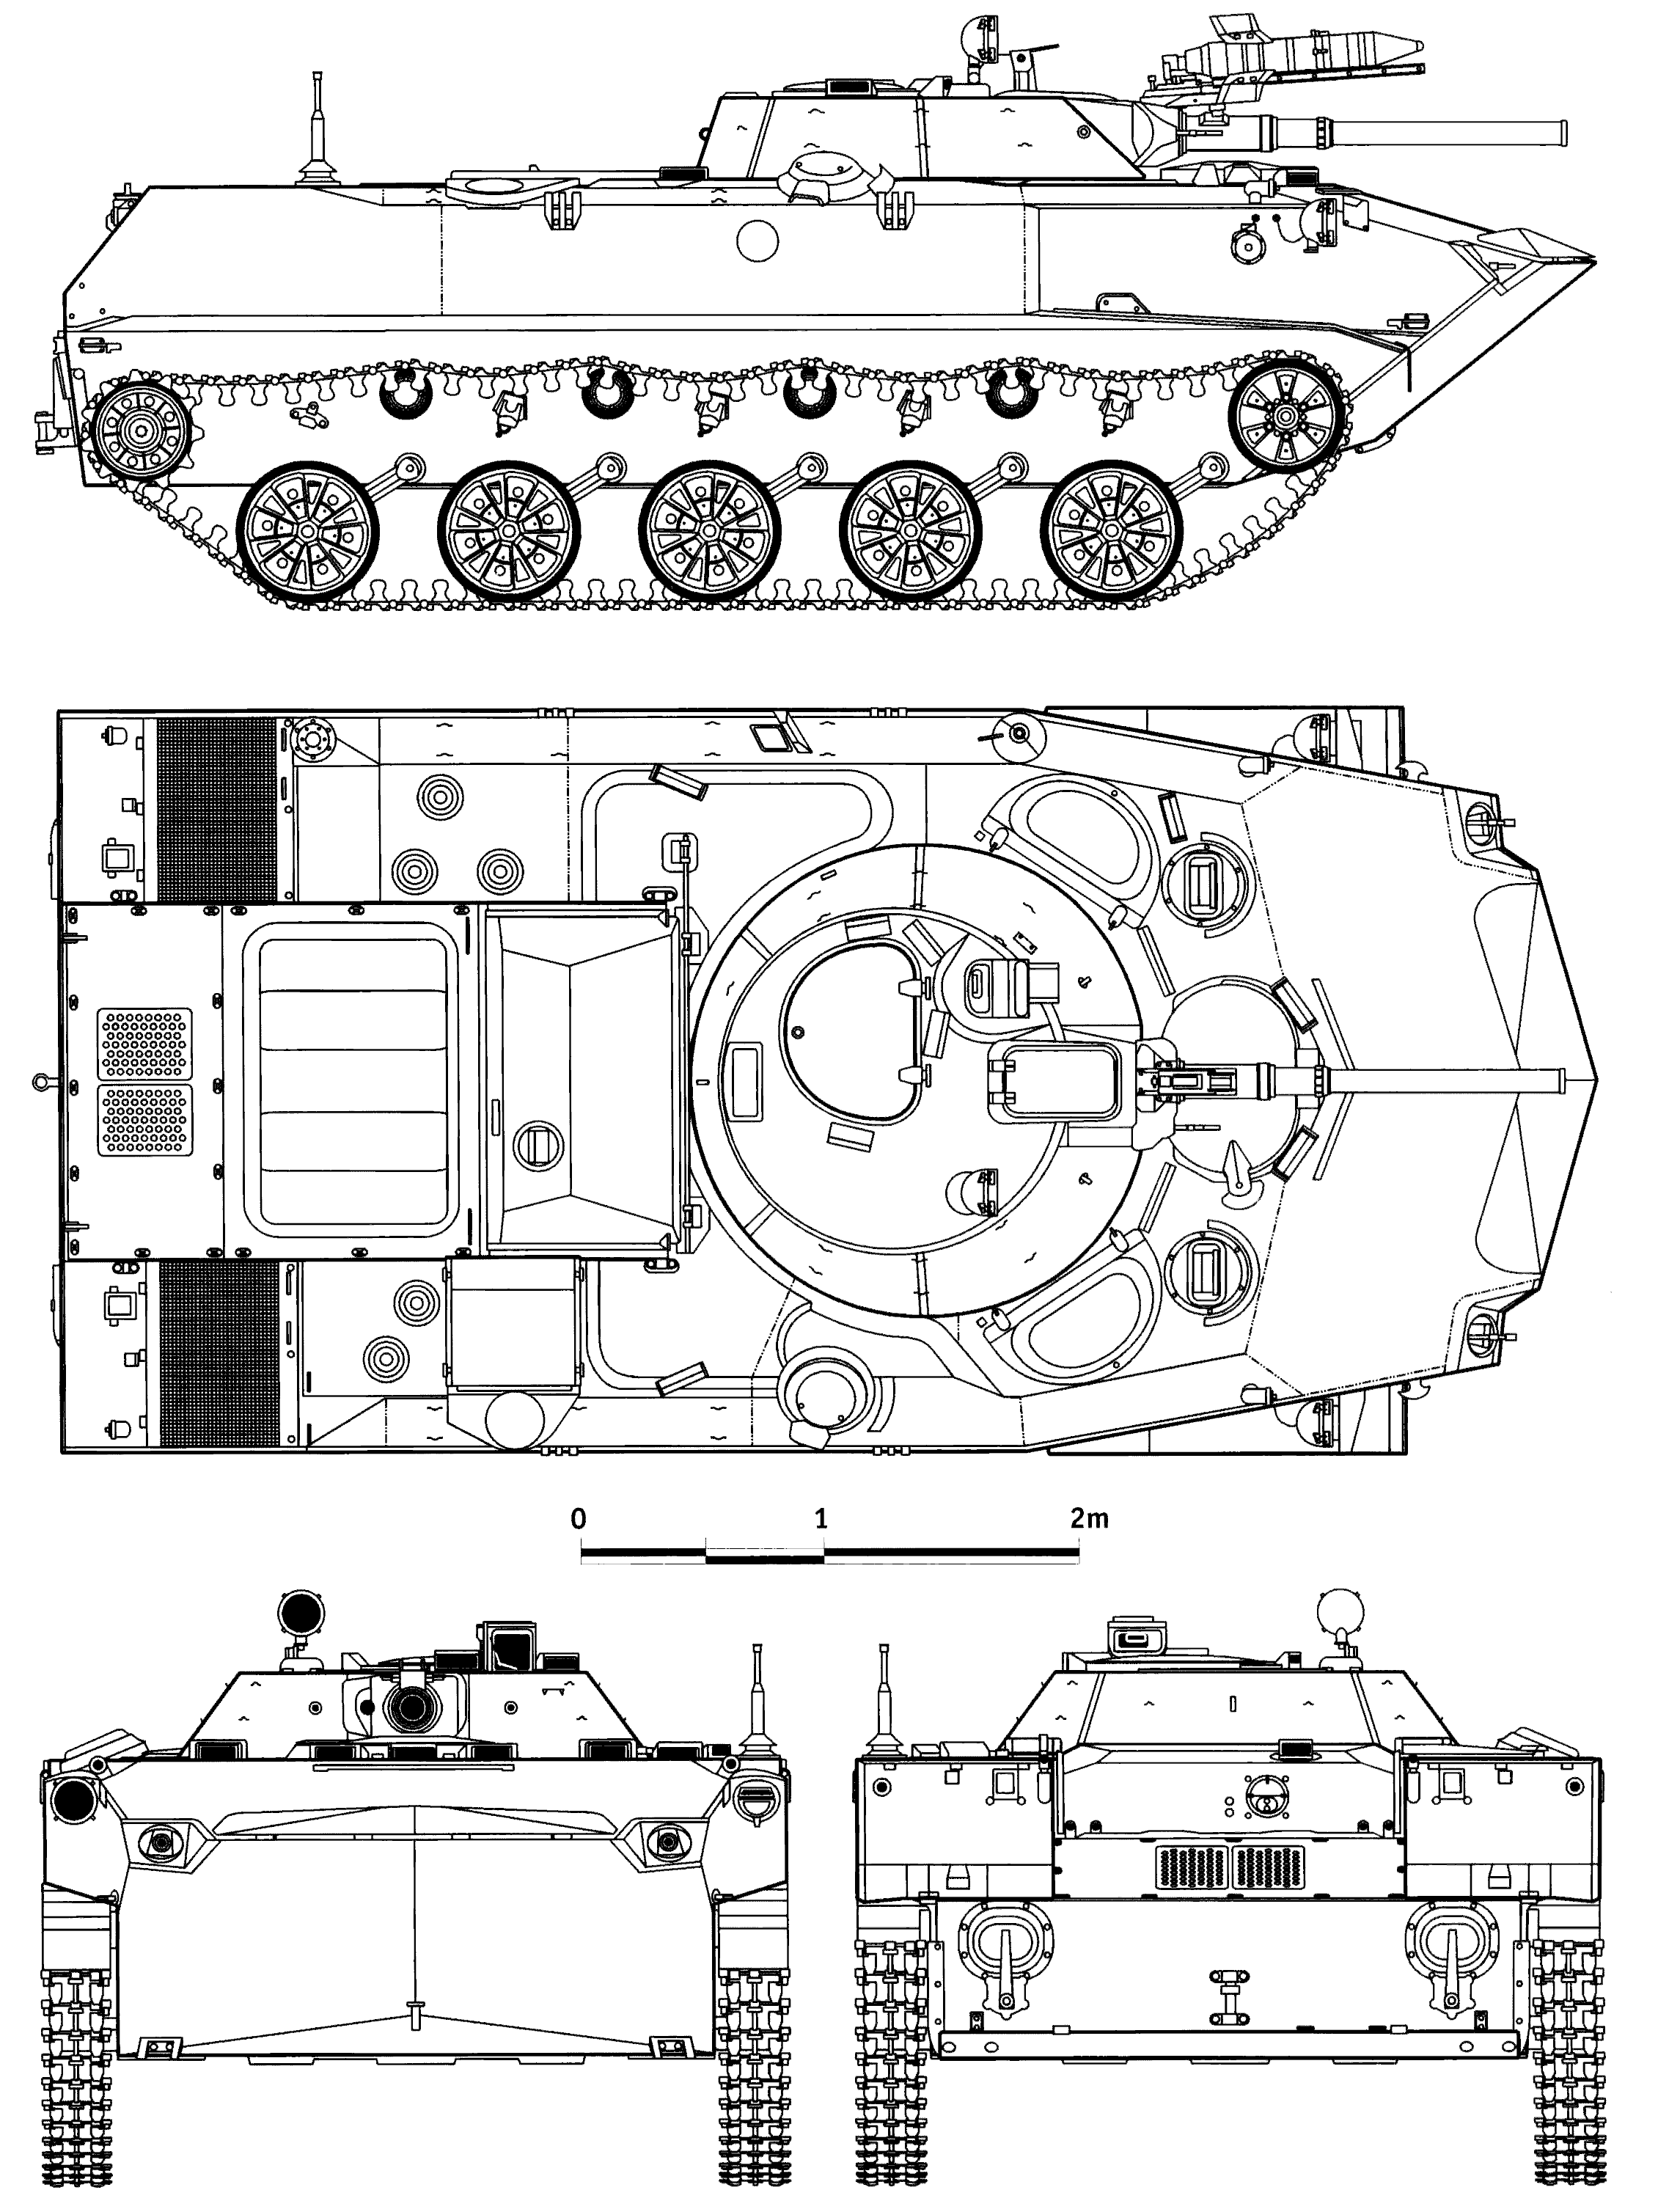 BMD-1 blueprint